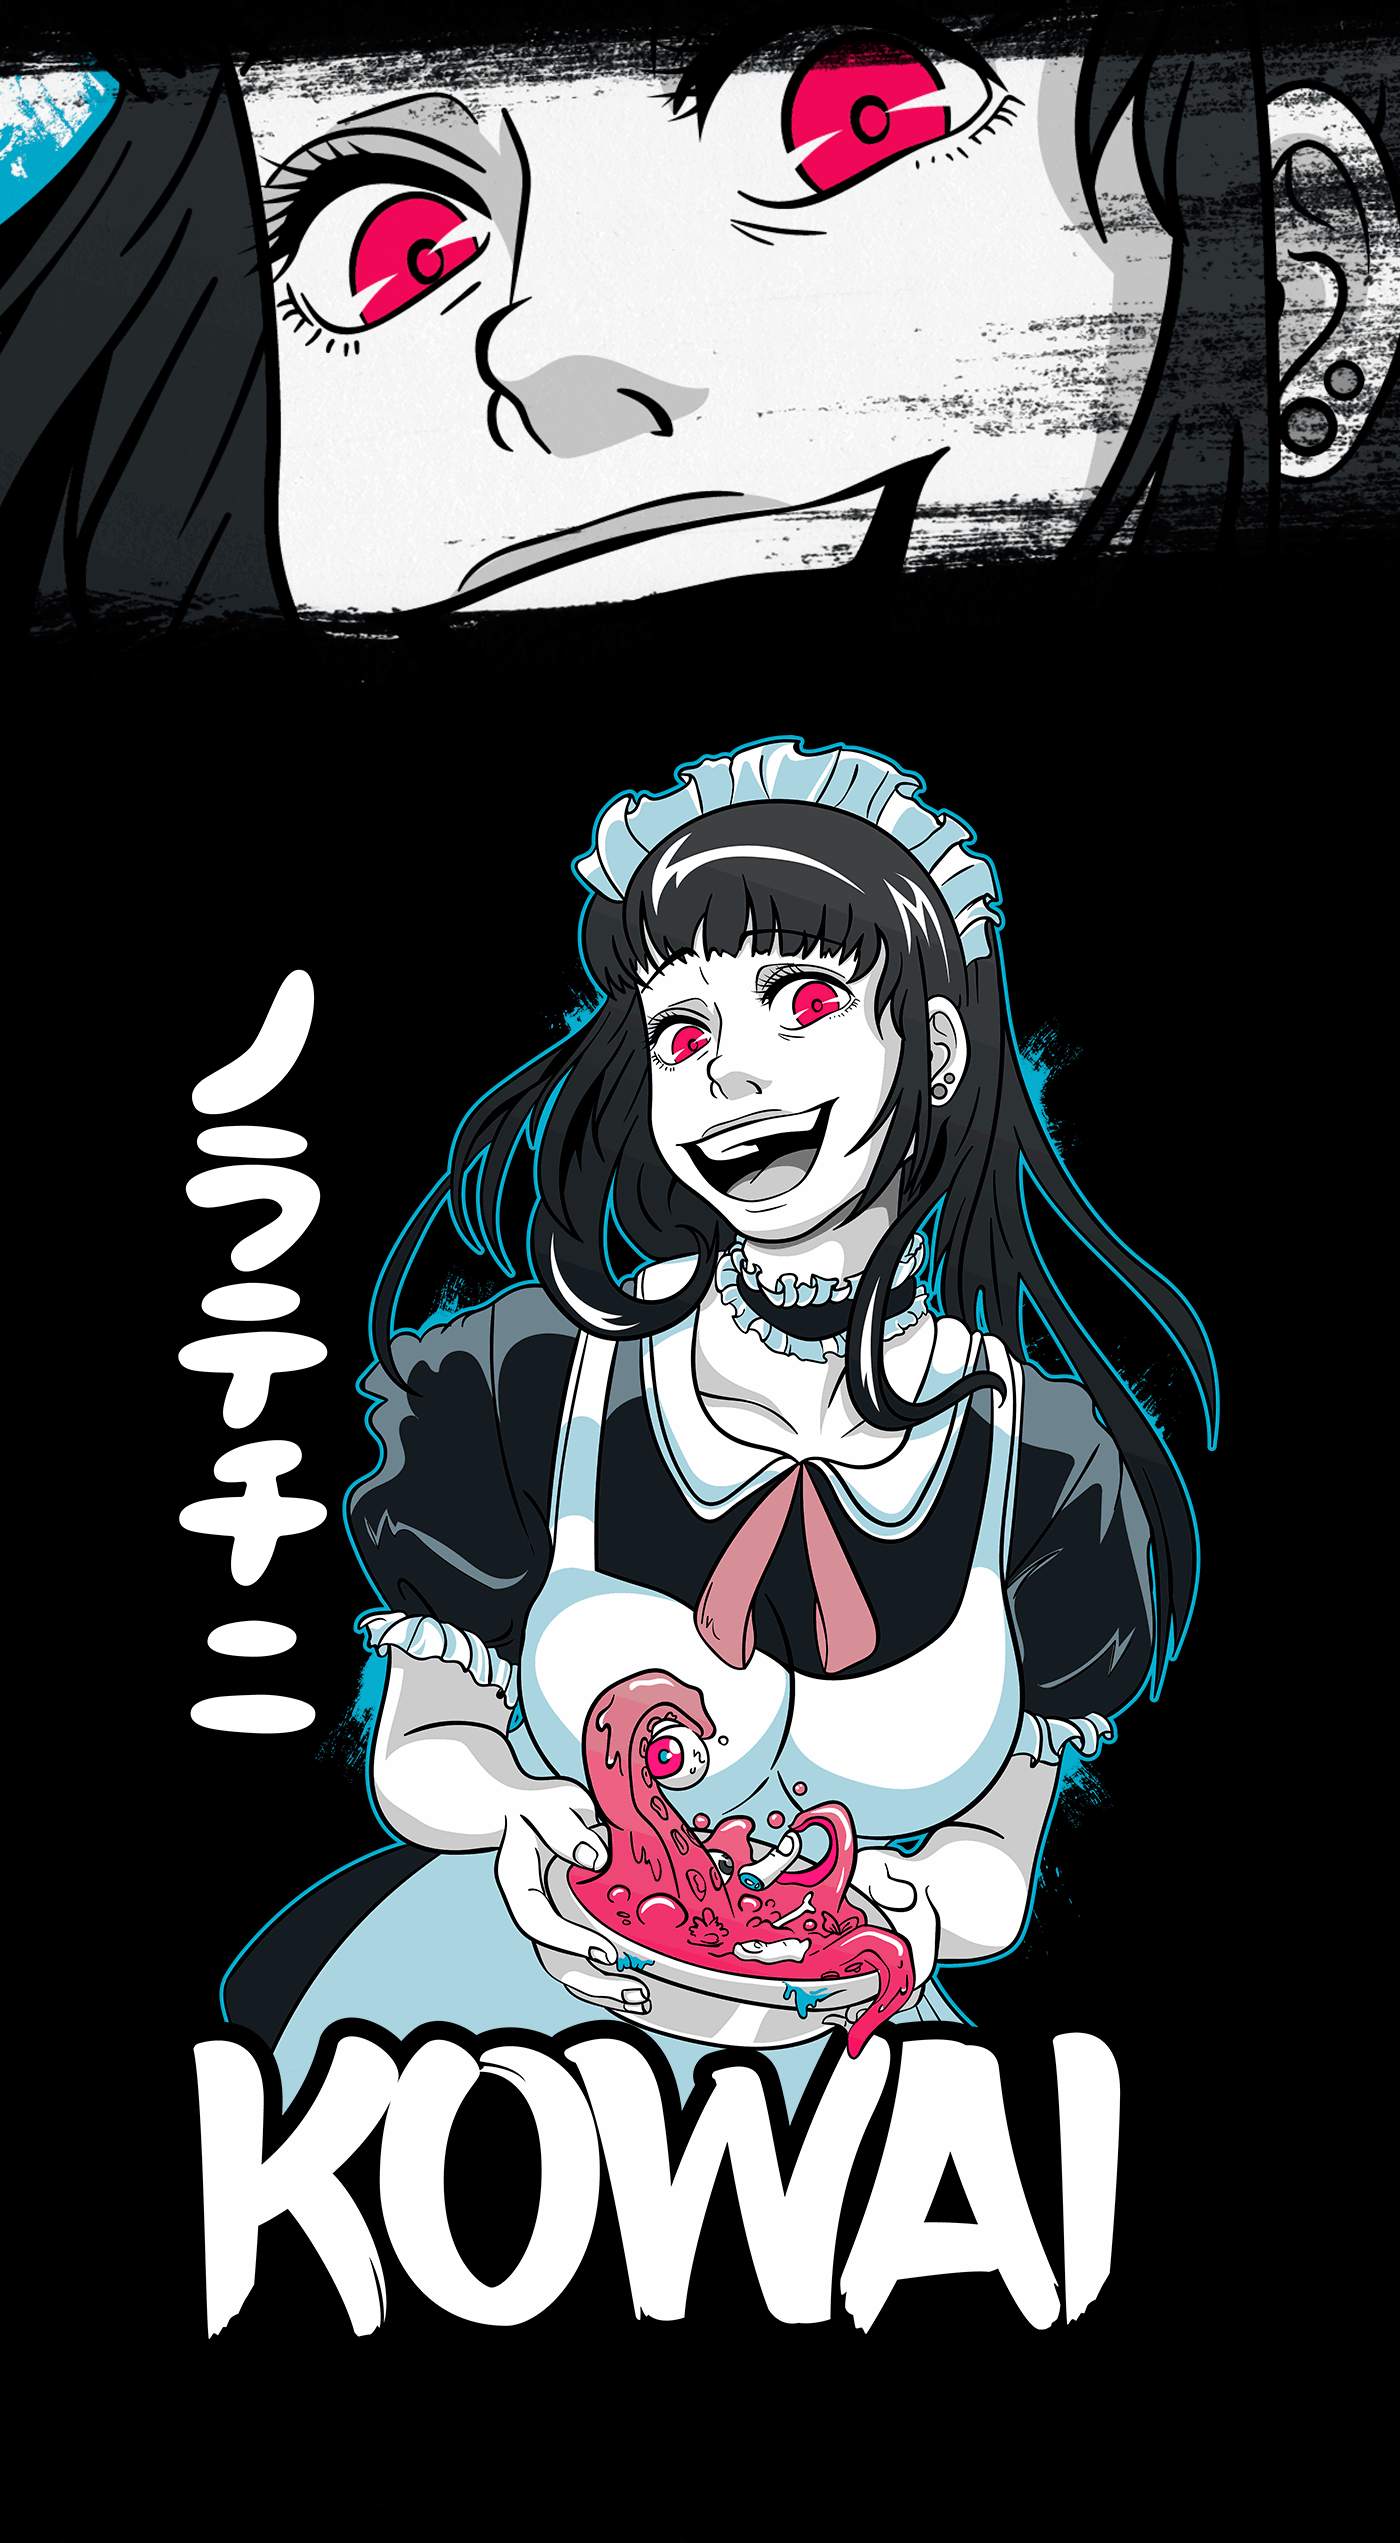 Creepy anime girl horror for otakus T-shirt on Behance